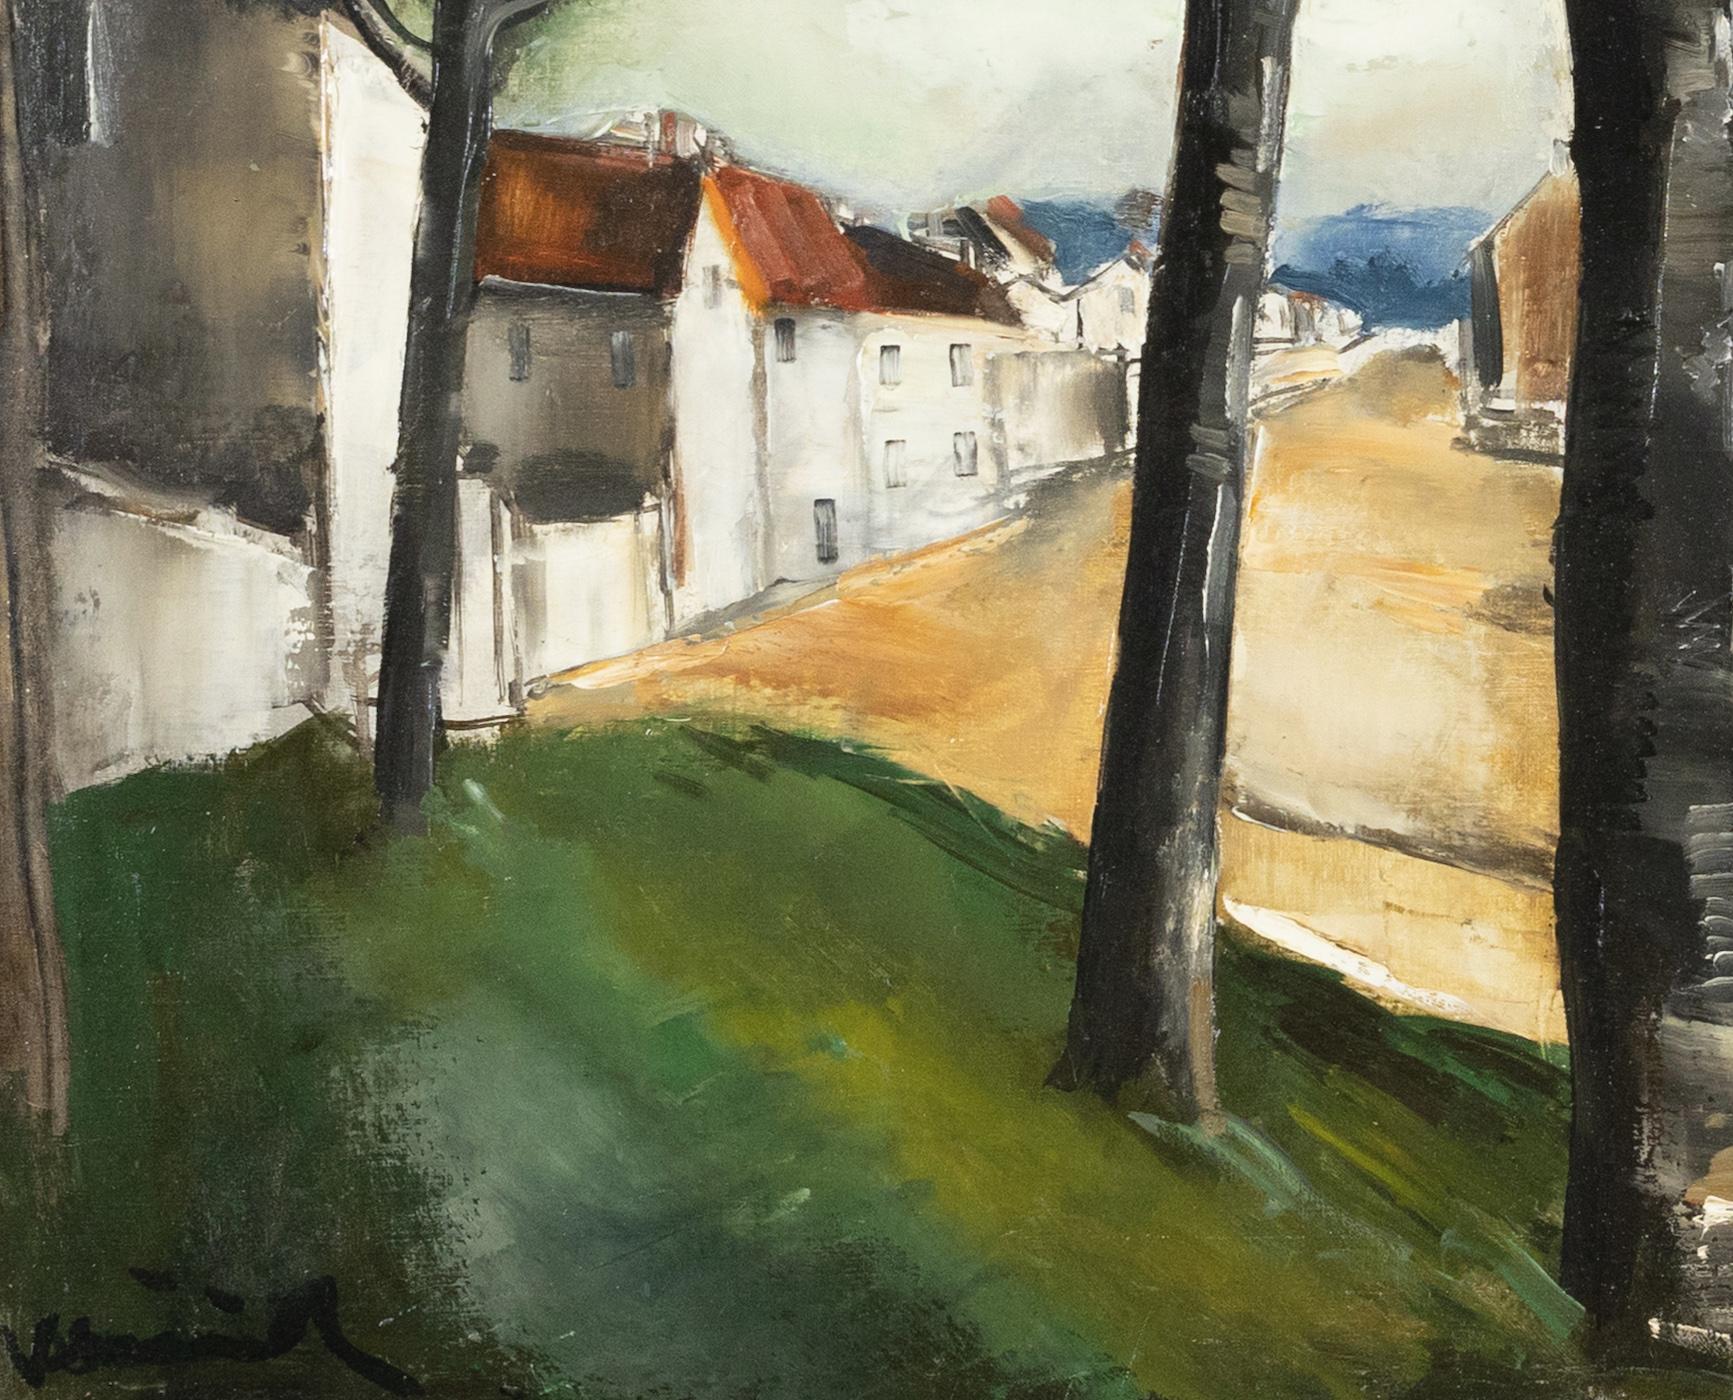 La Route by Maurice de Vlaminck - Landscape painting For Sale 4